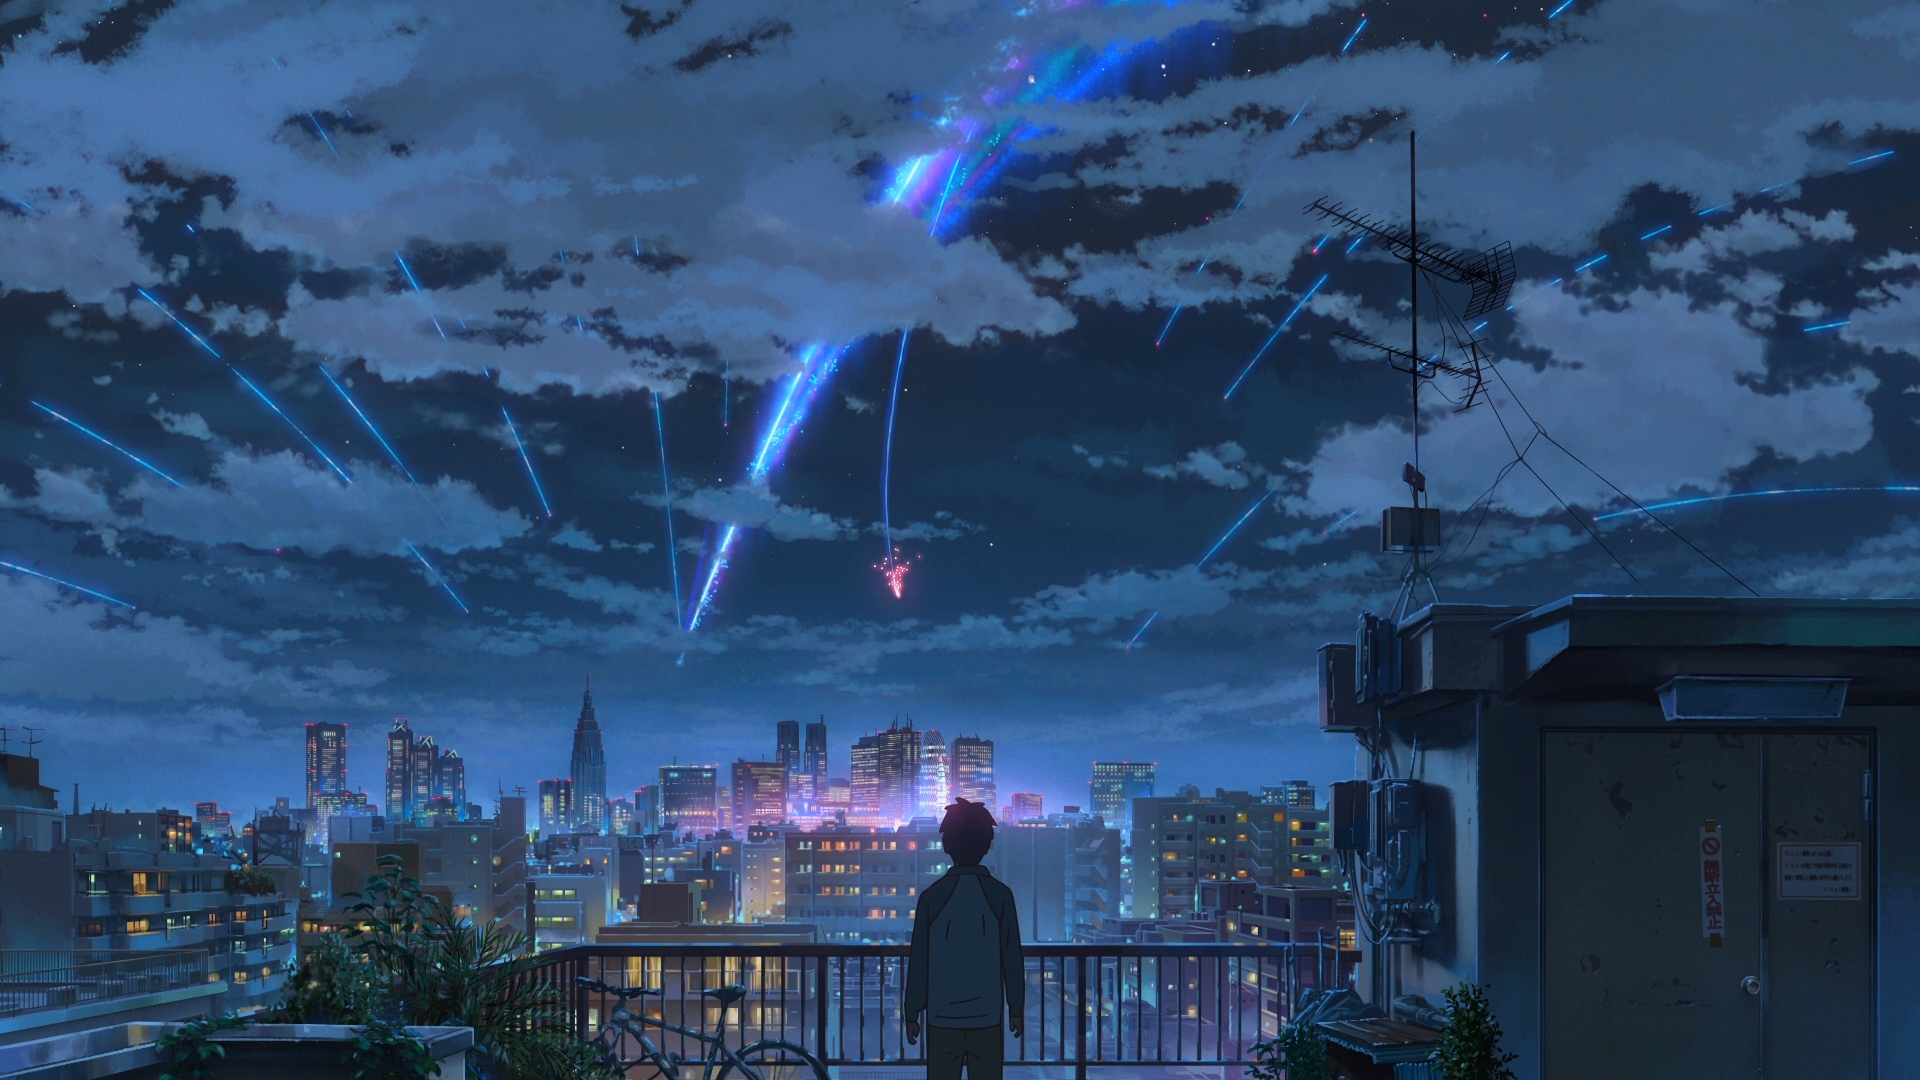 Anime 1920x1080 Kimi no Na Wa Makoto Shinkai  starry night comet